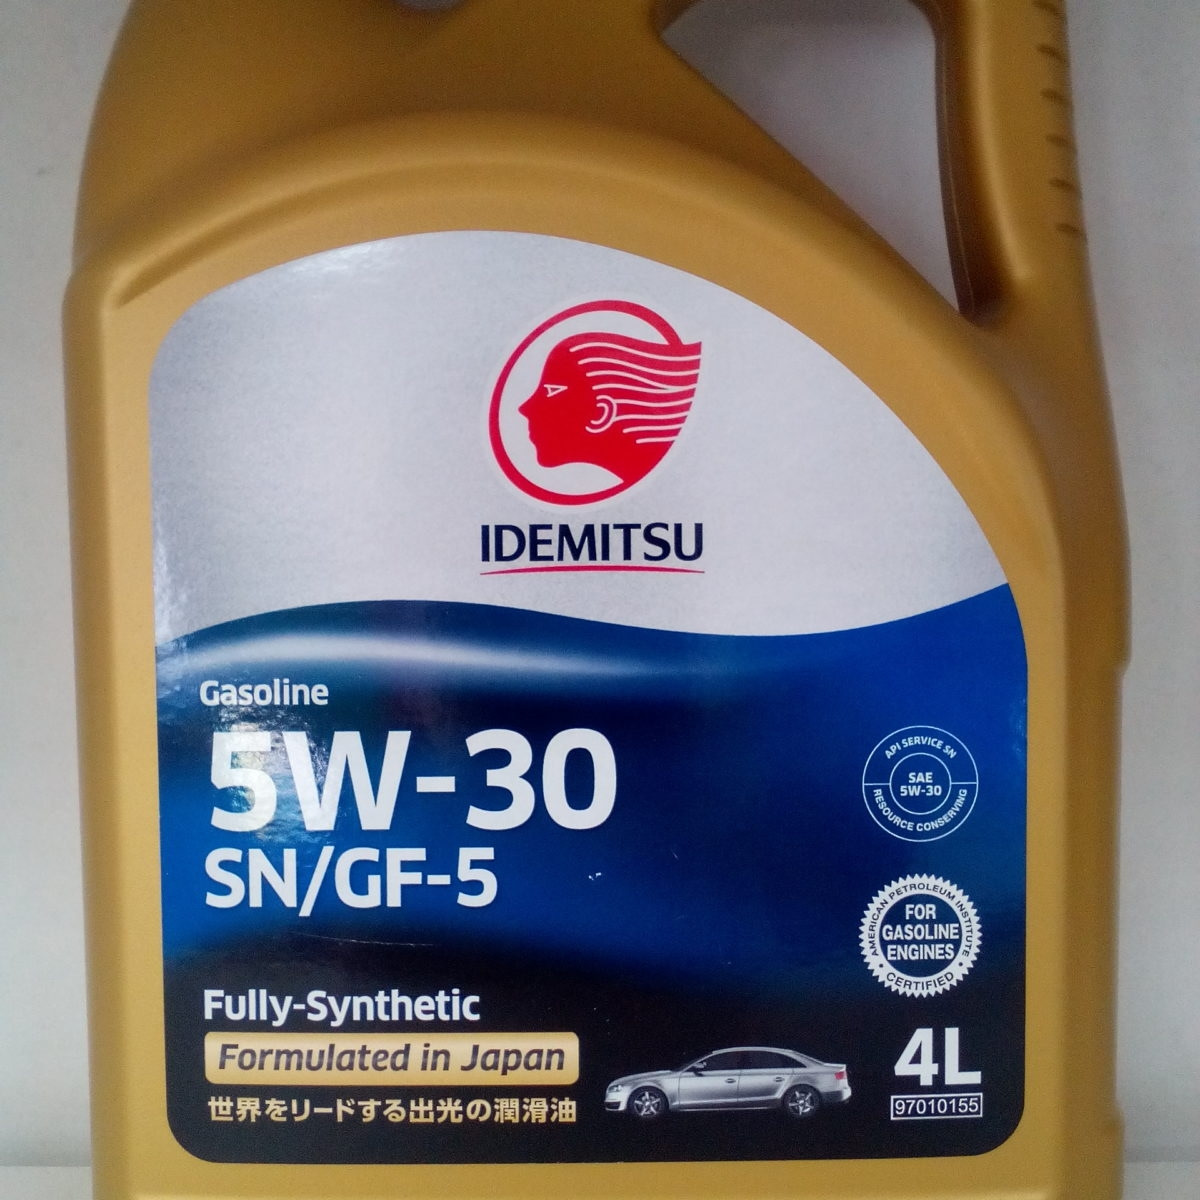 Лучшие масла sp. Idemitsu 5w30 SN/gf fully Synthetic. Idemitsu fully-Synthetic SN/gf-5. Idemitsu SN 5w-30 fully-Synthetic. Idemitsu 5w30 a5/b5.